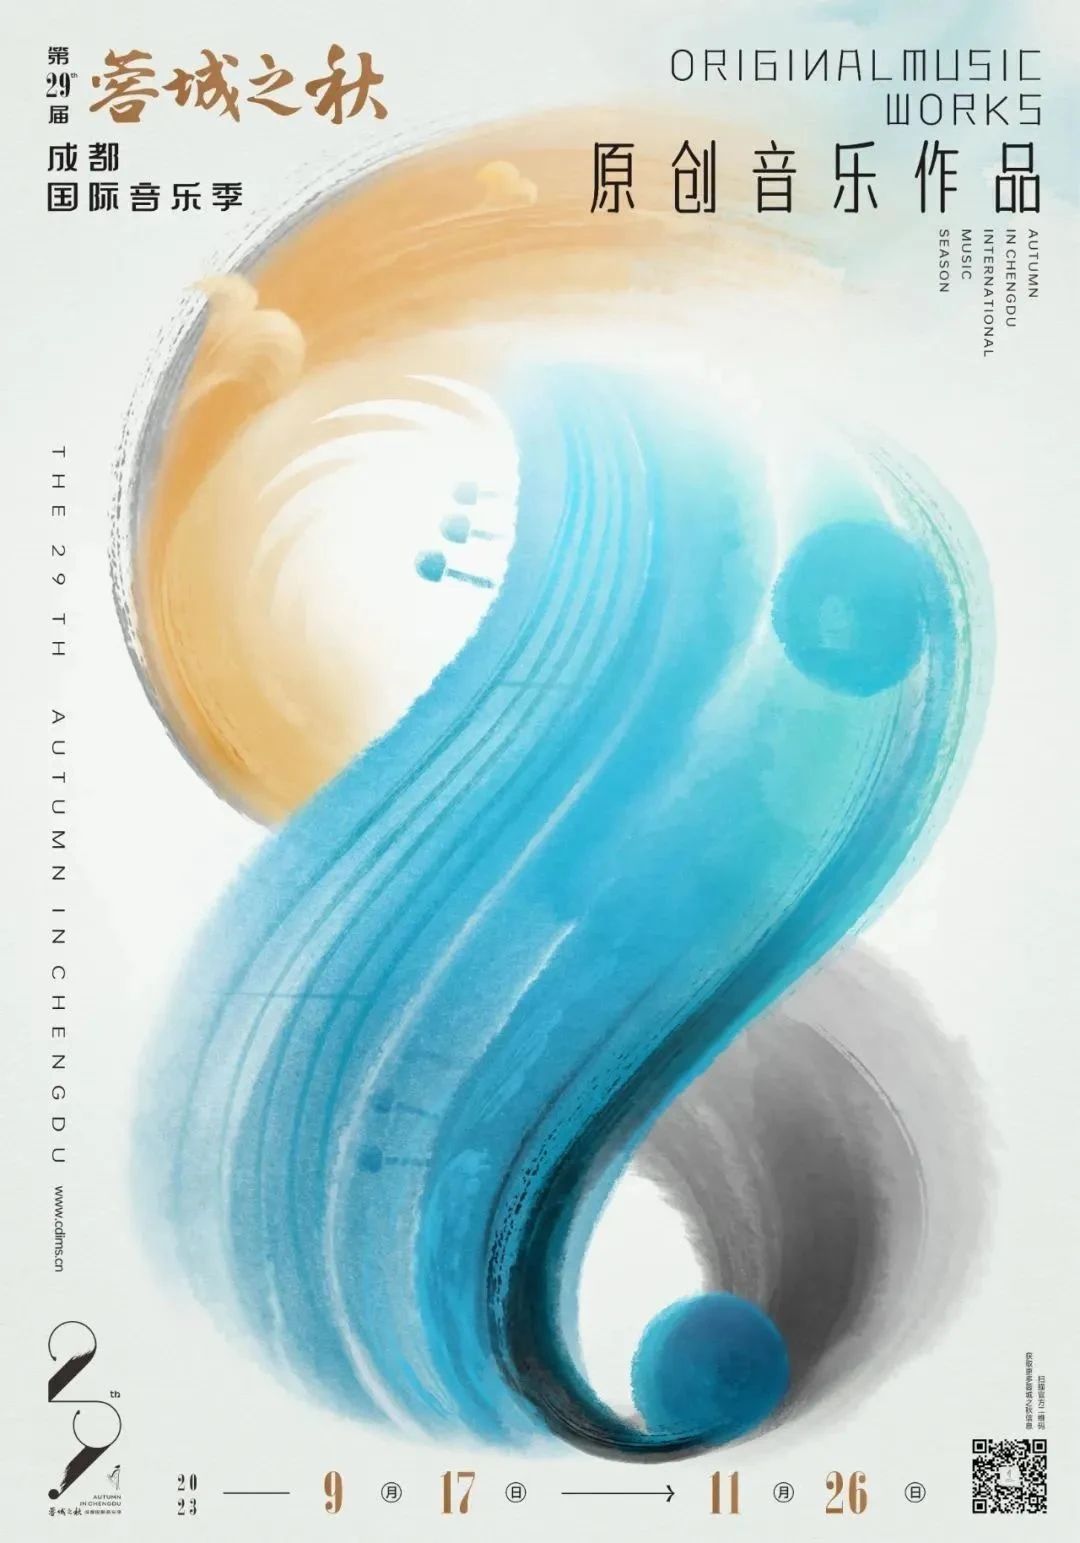 成都国际音乐季海报,设计很中国!